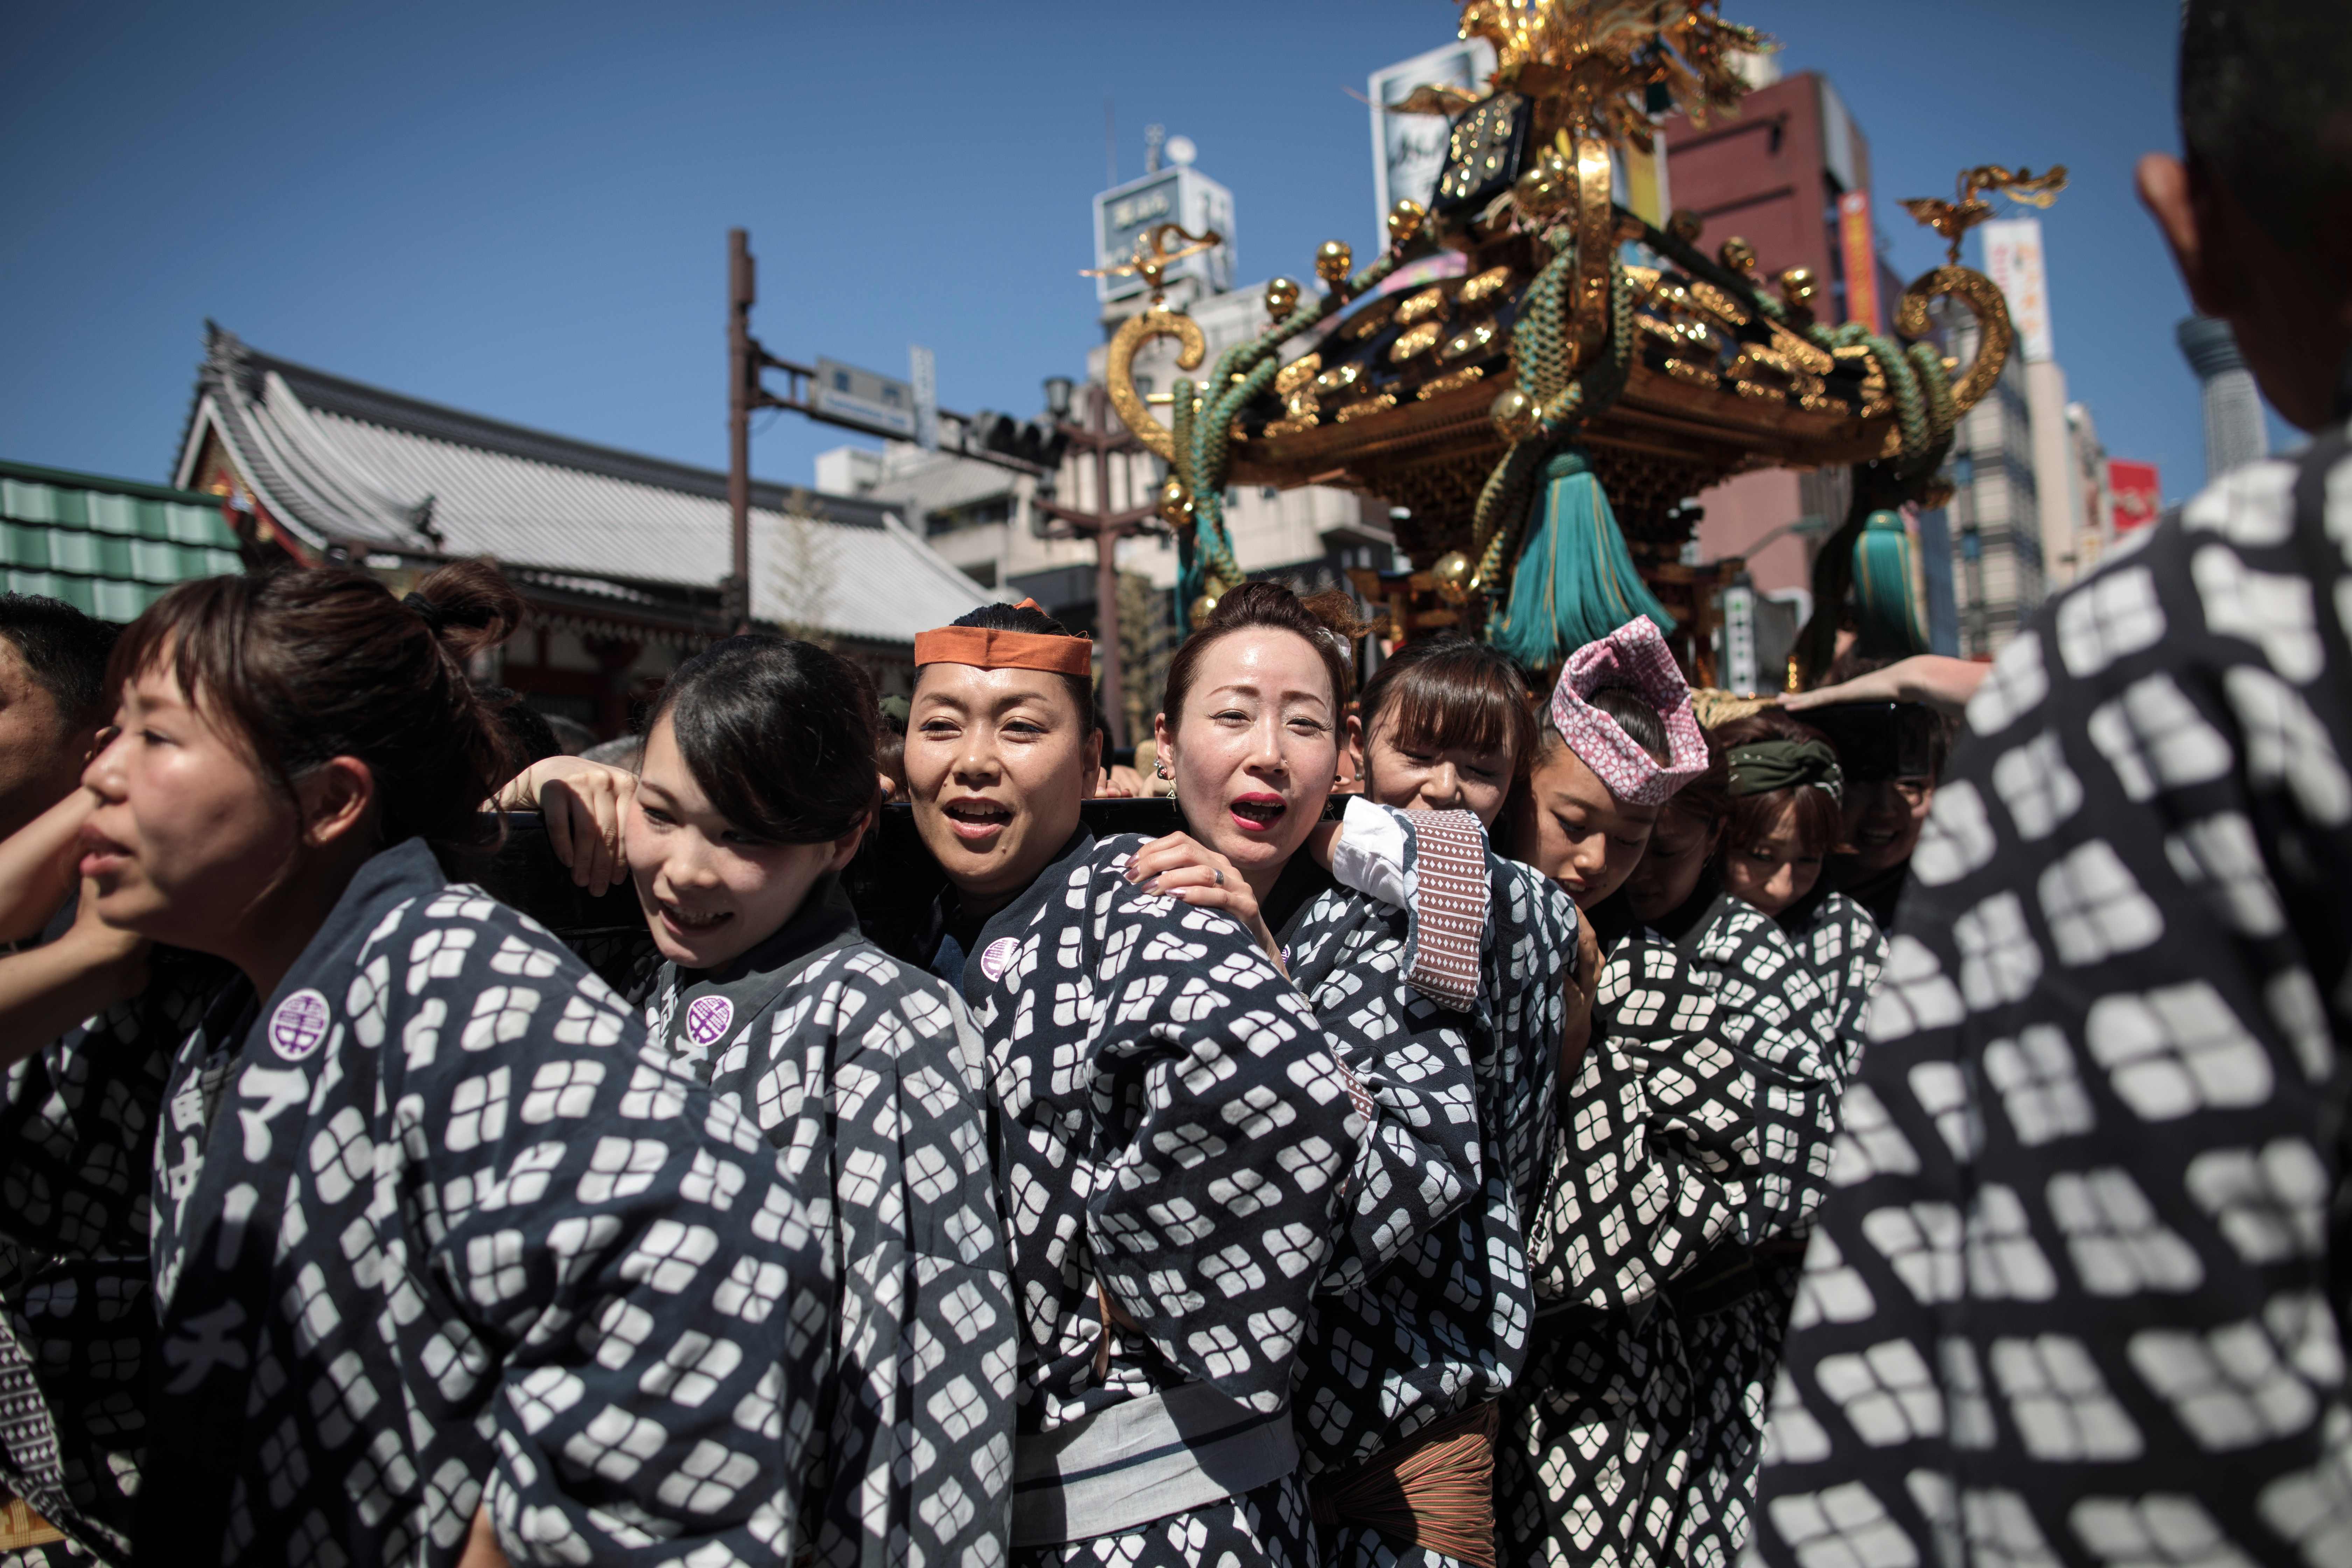 فتيات الشنتو يحتفلن بمهرجان الضرحة الثلاثة فى اليابان